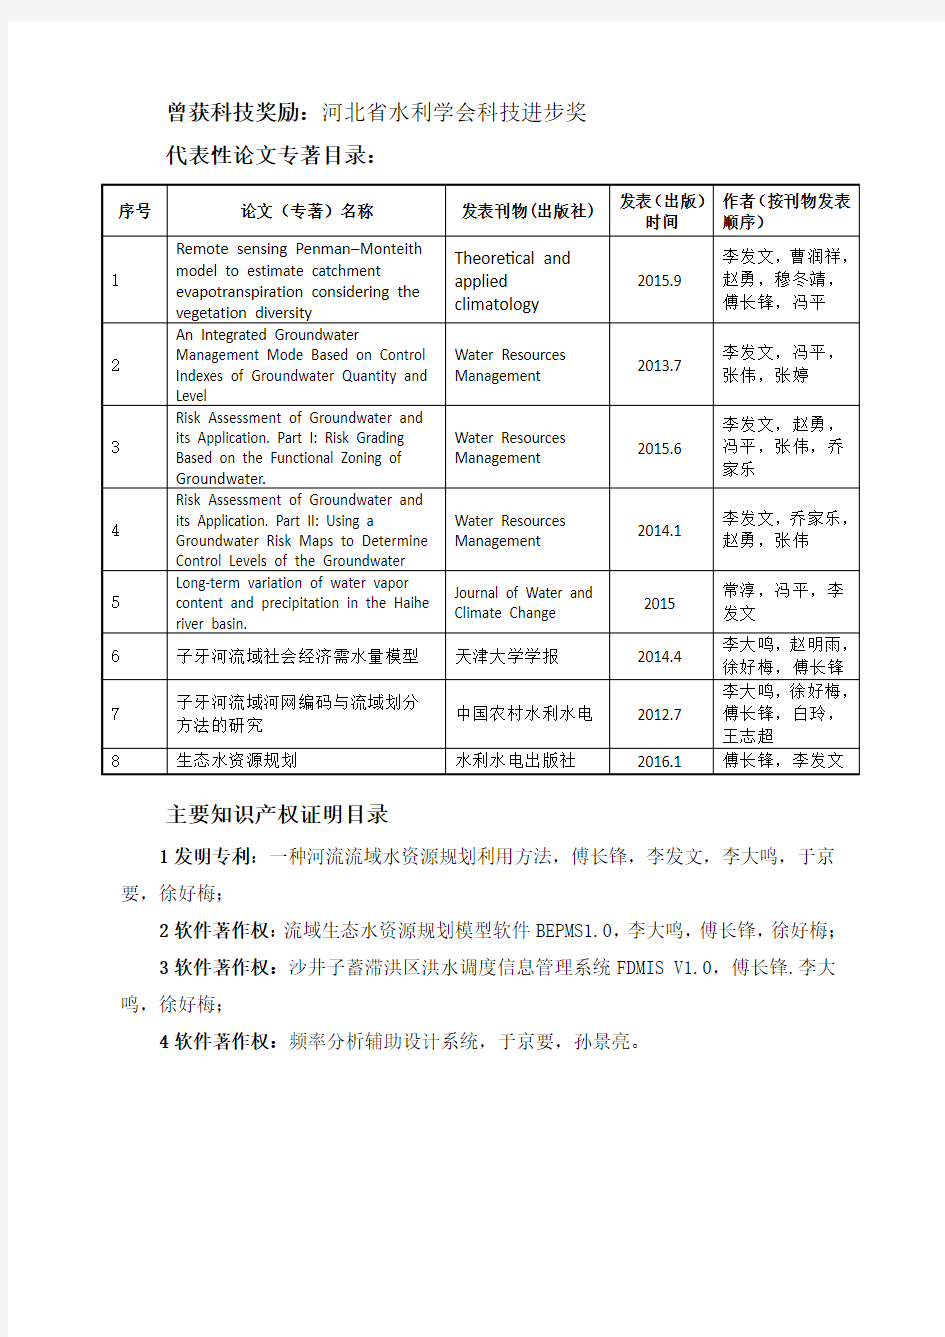 2016年推荐河北省科技进步奖项目公示